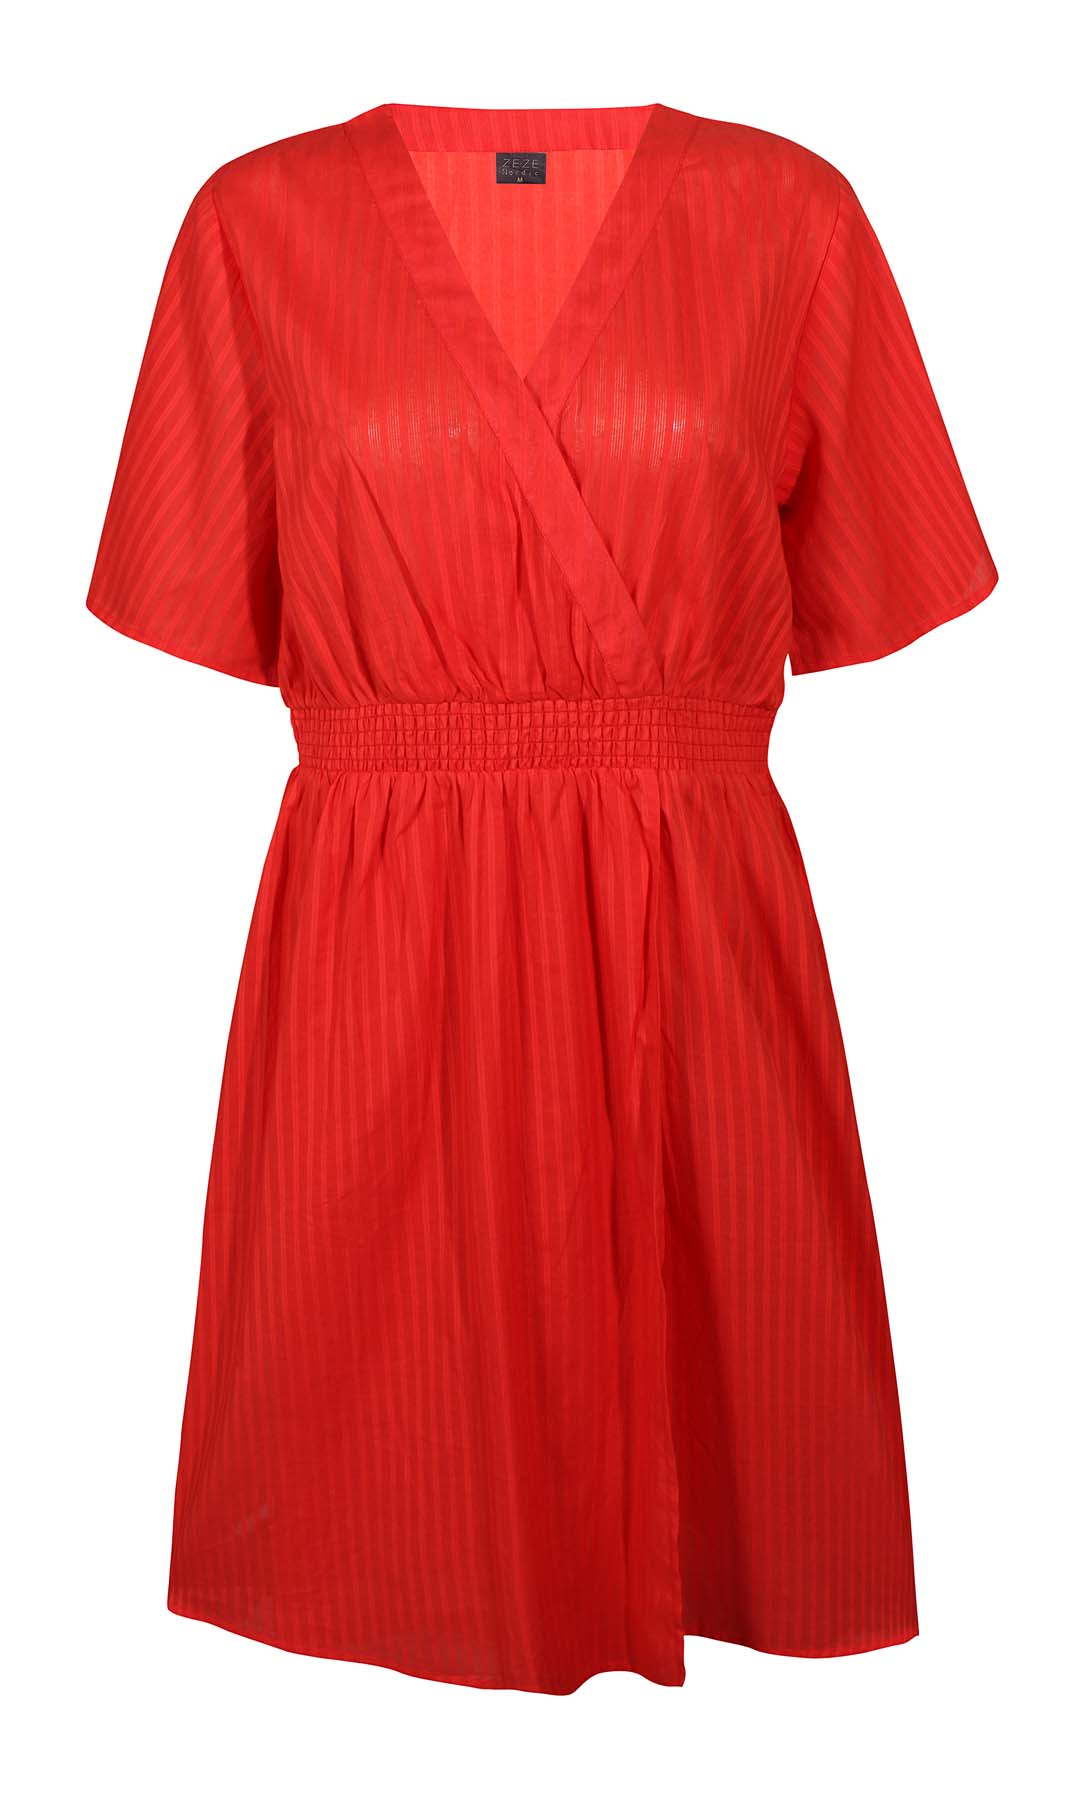 Faisa 164 - Dress - Red